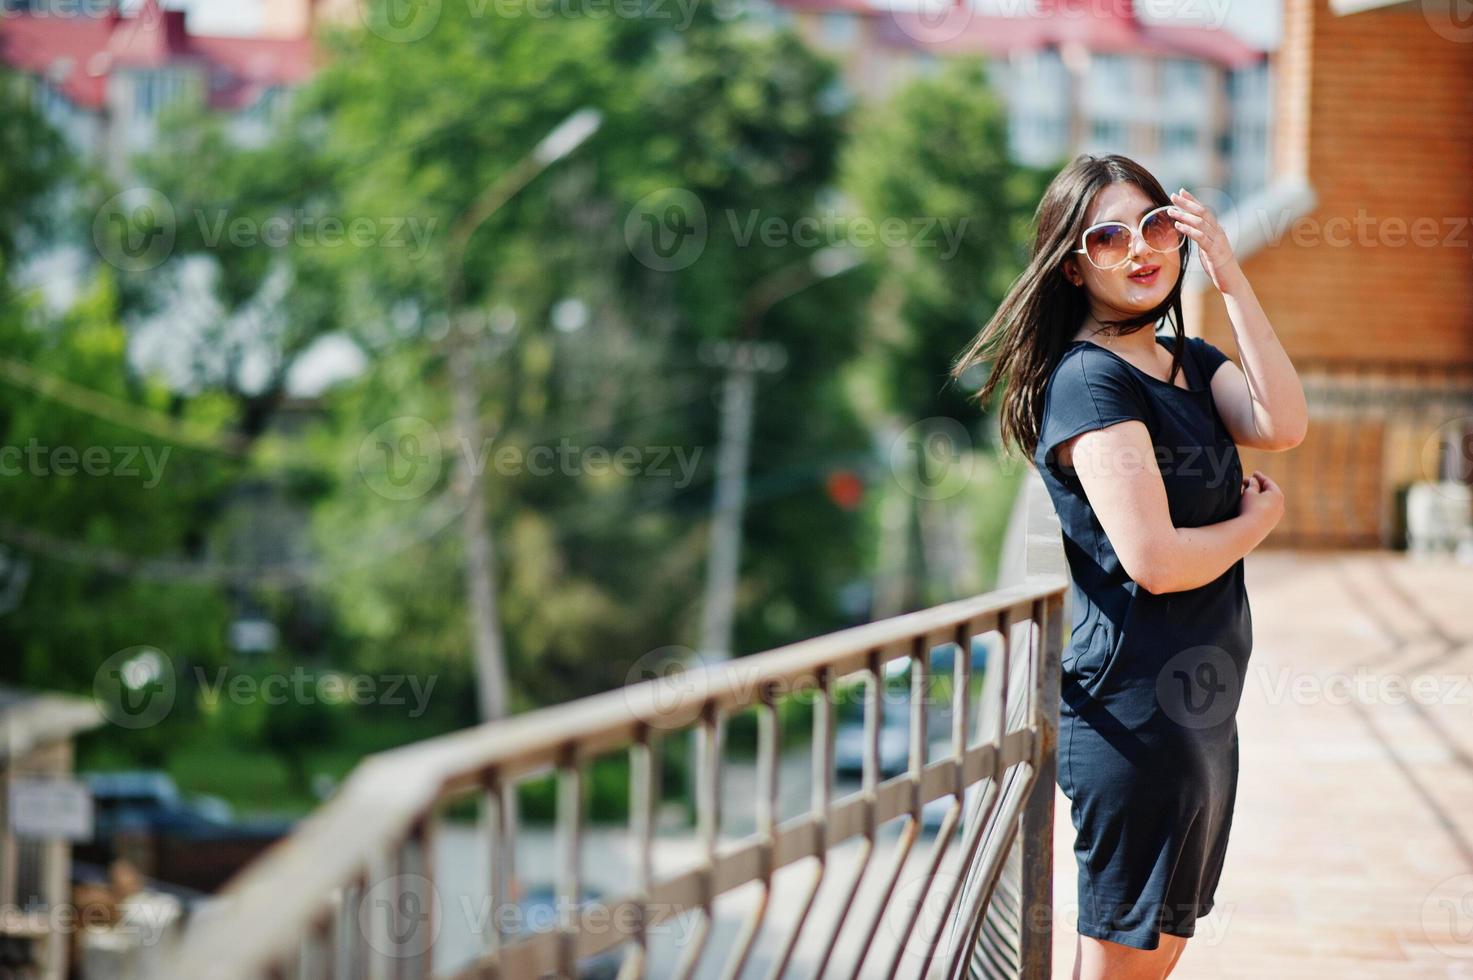 fille brune en robe noire, lunettes de soleil posant dans la rue de la ville. photo